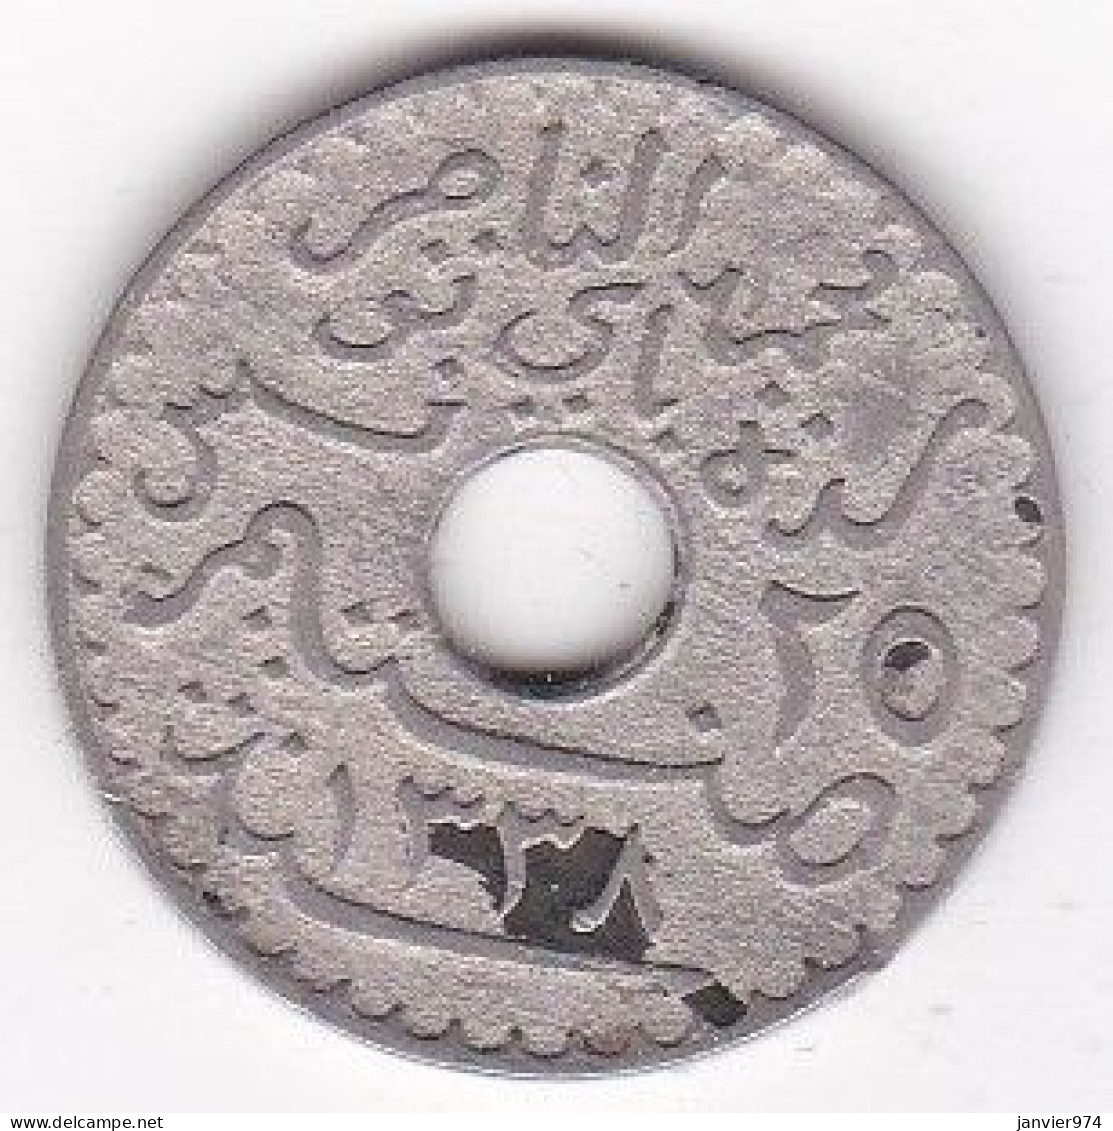 Protectorat Français 25 Centimes 1920 , Bronze Nickel, Lec# 131 - Tunisia